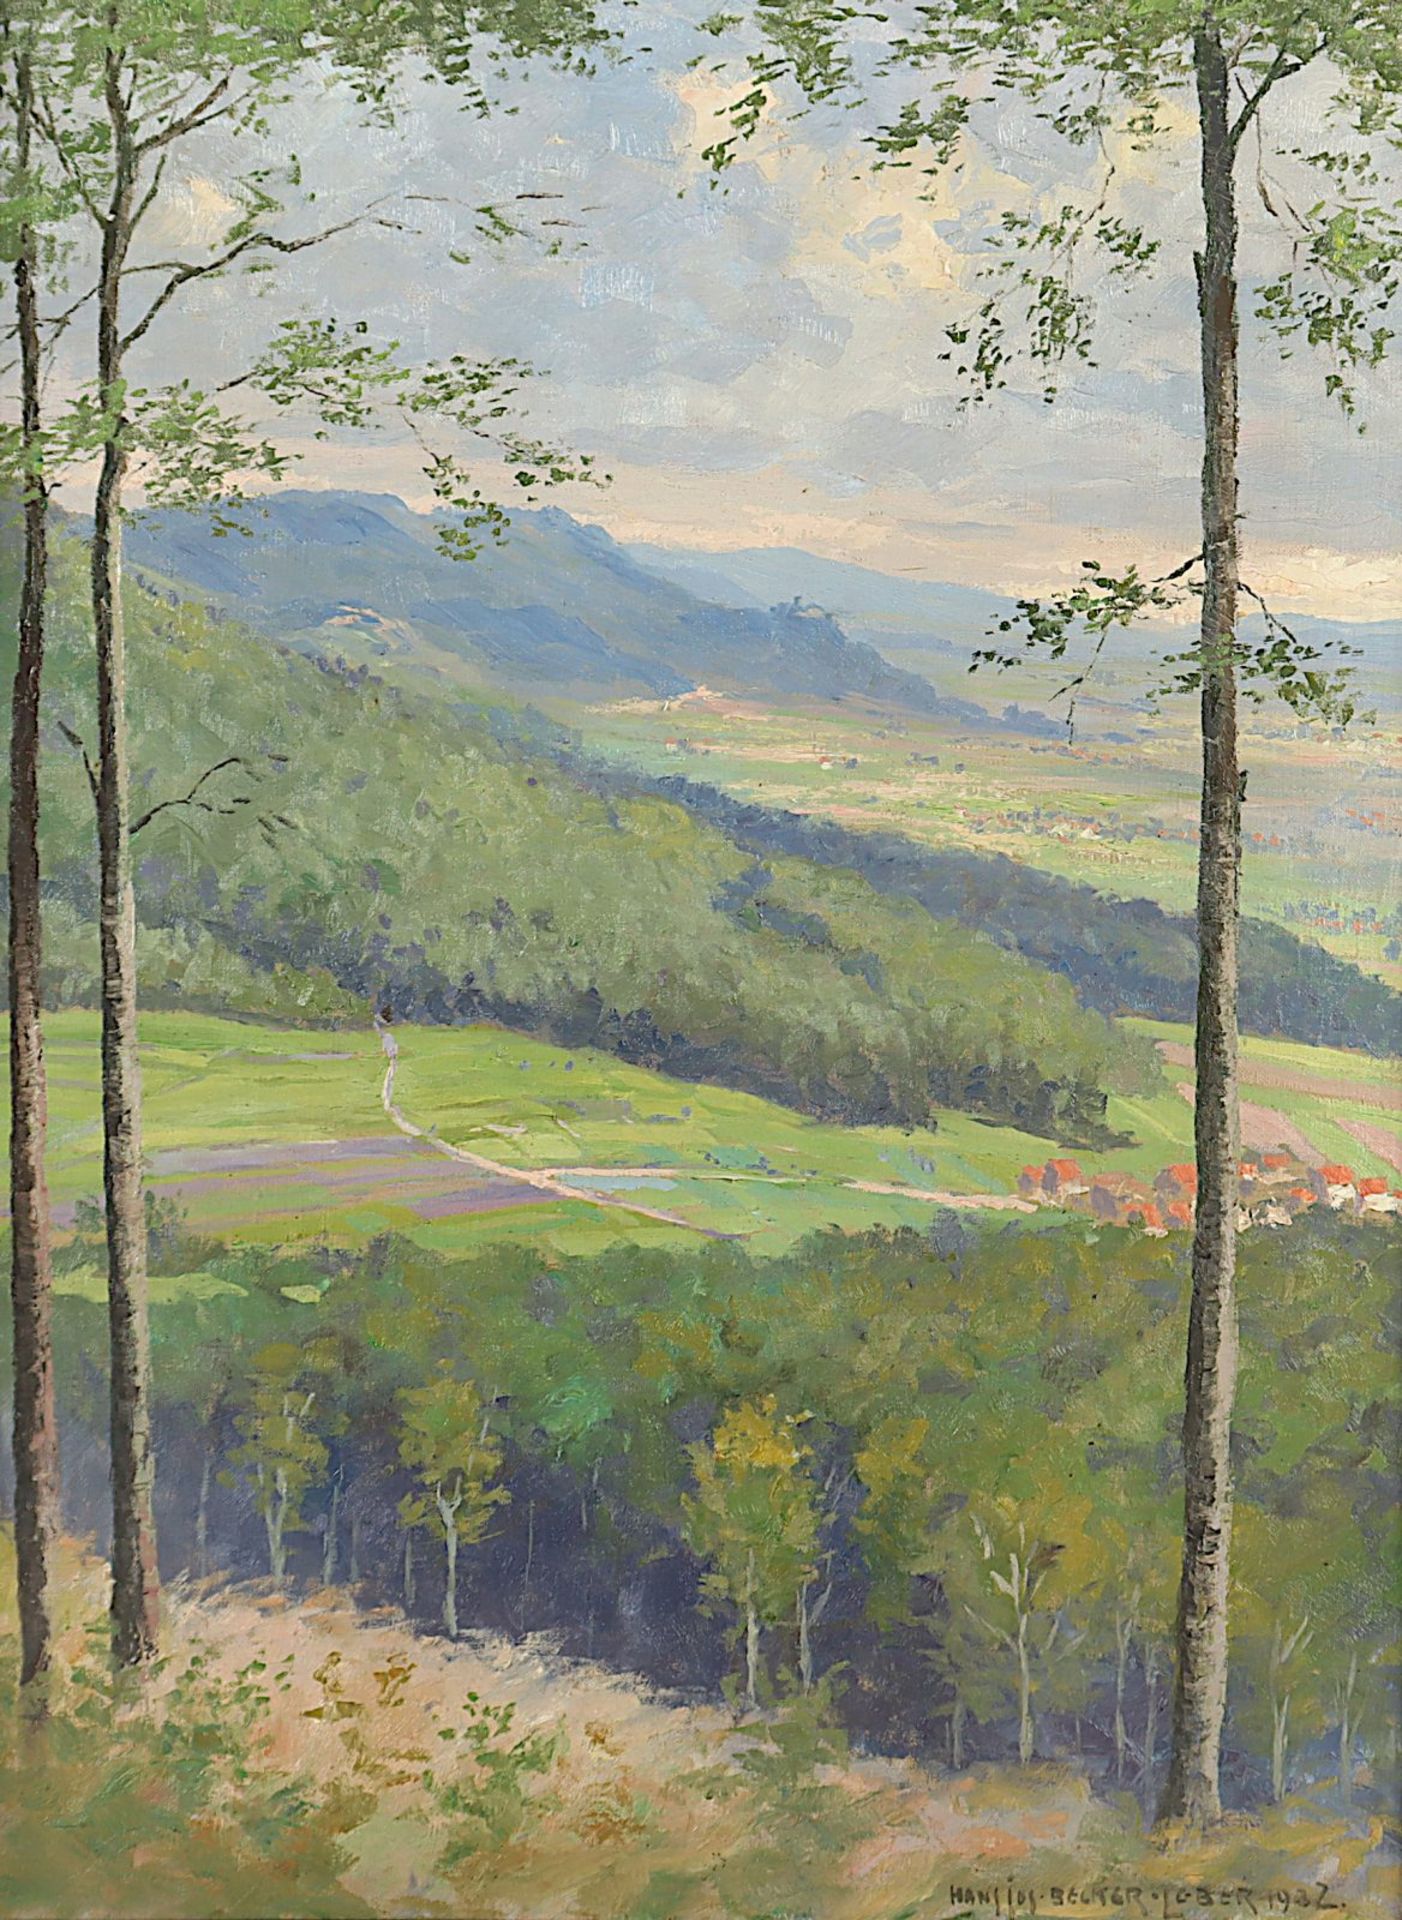 Becker-Leber, Hans- Josef, "Landschaft", R.